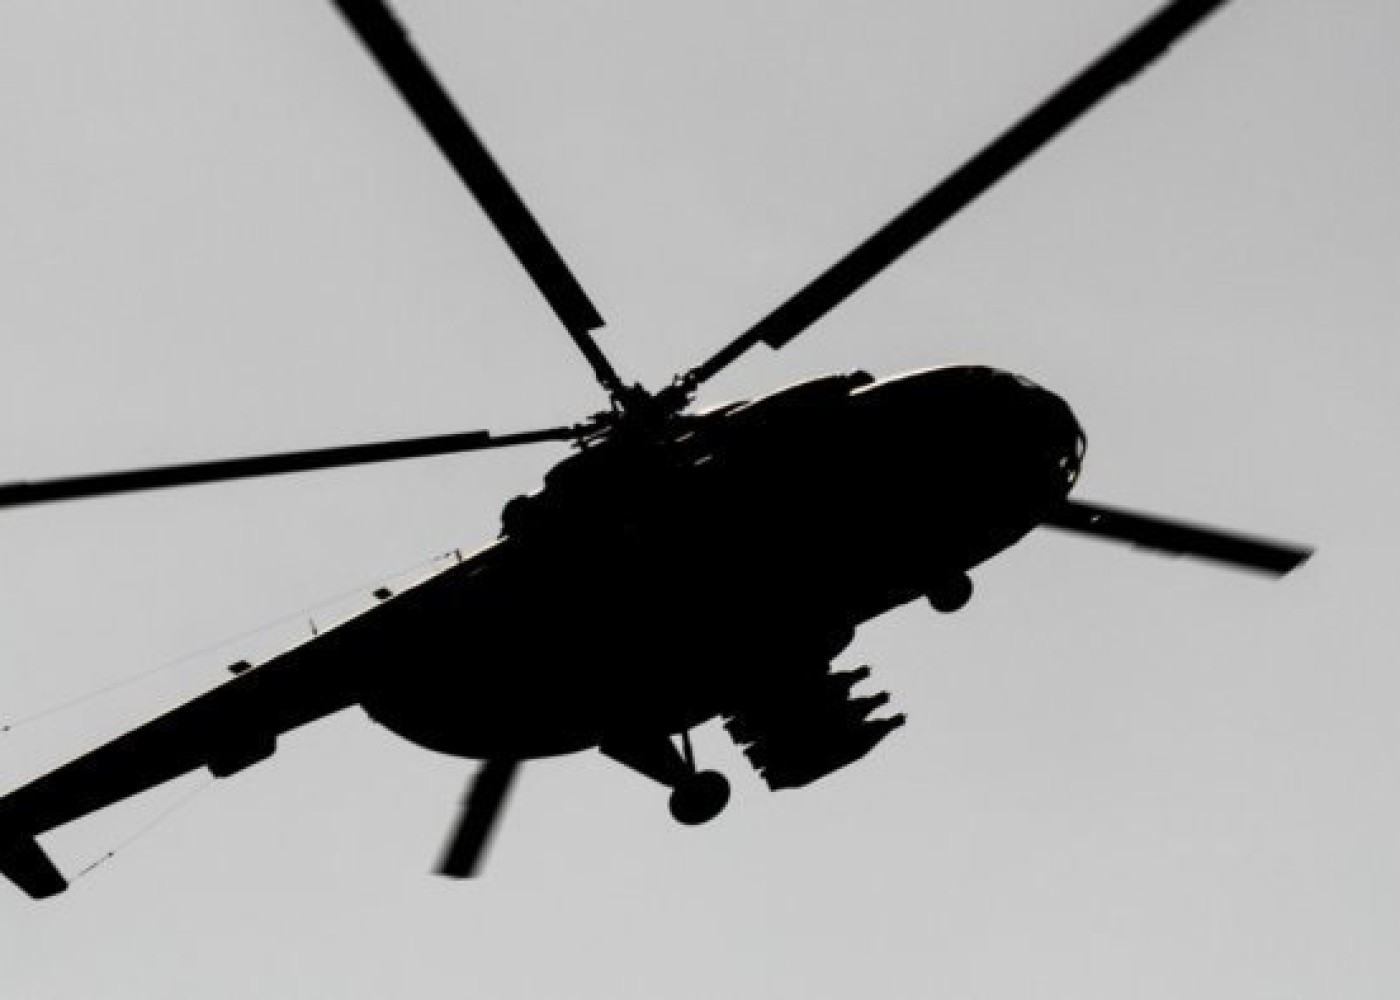 Xorvatiyada helikopter qəzası - Macar hərbçilər ÖLDÜ